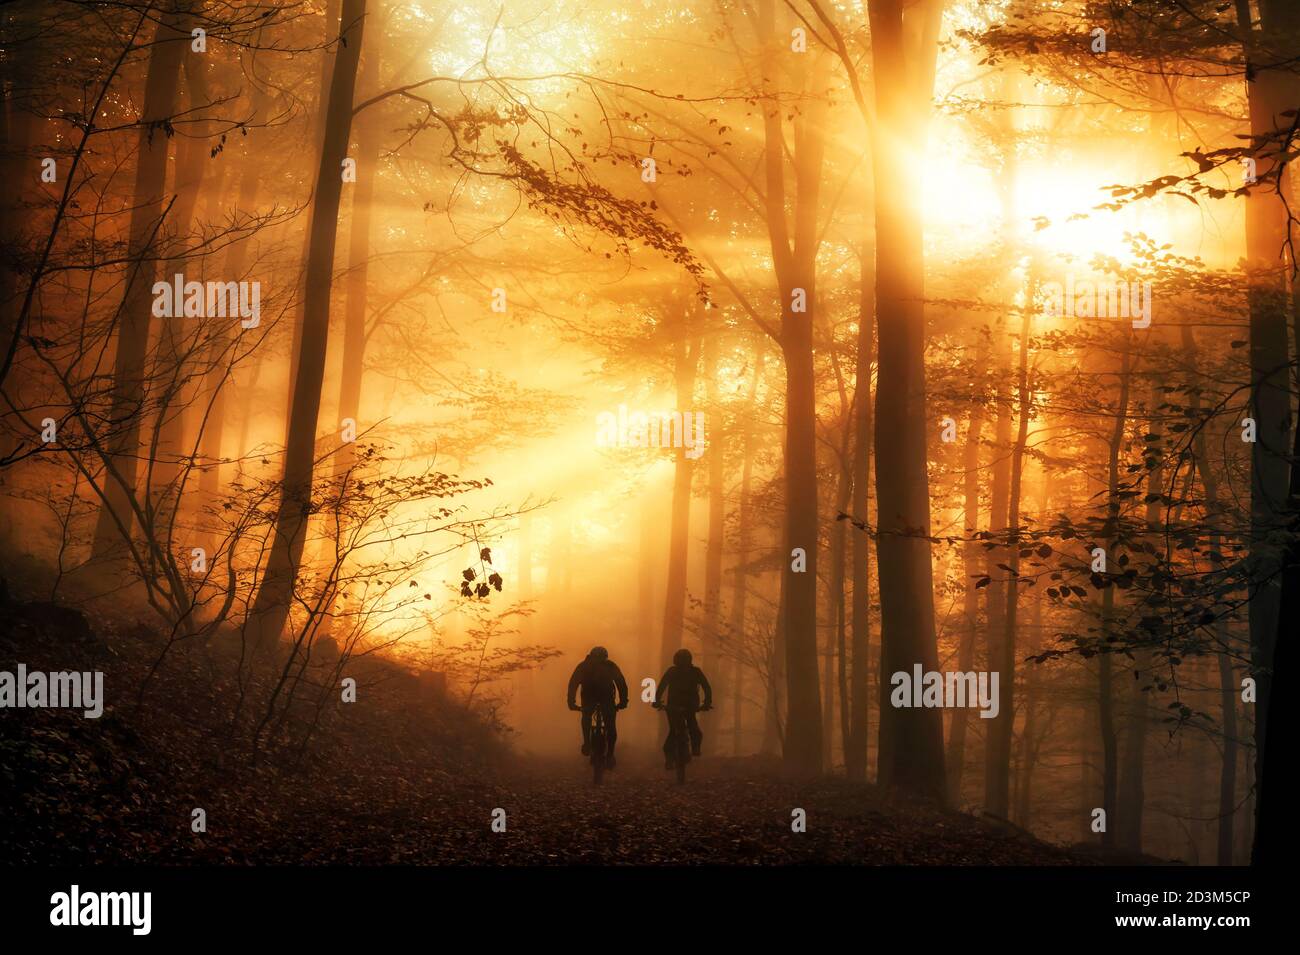 Atmosfera luminosa surreale in una foresta, con i raggi del sole che cadono attraverso la nebbia autunnale e le sagome di due persone in bicicletta su un sentiero Foto Stock